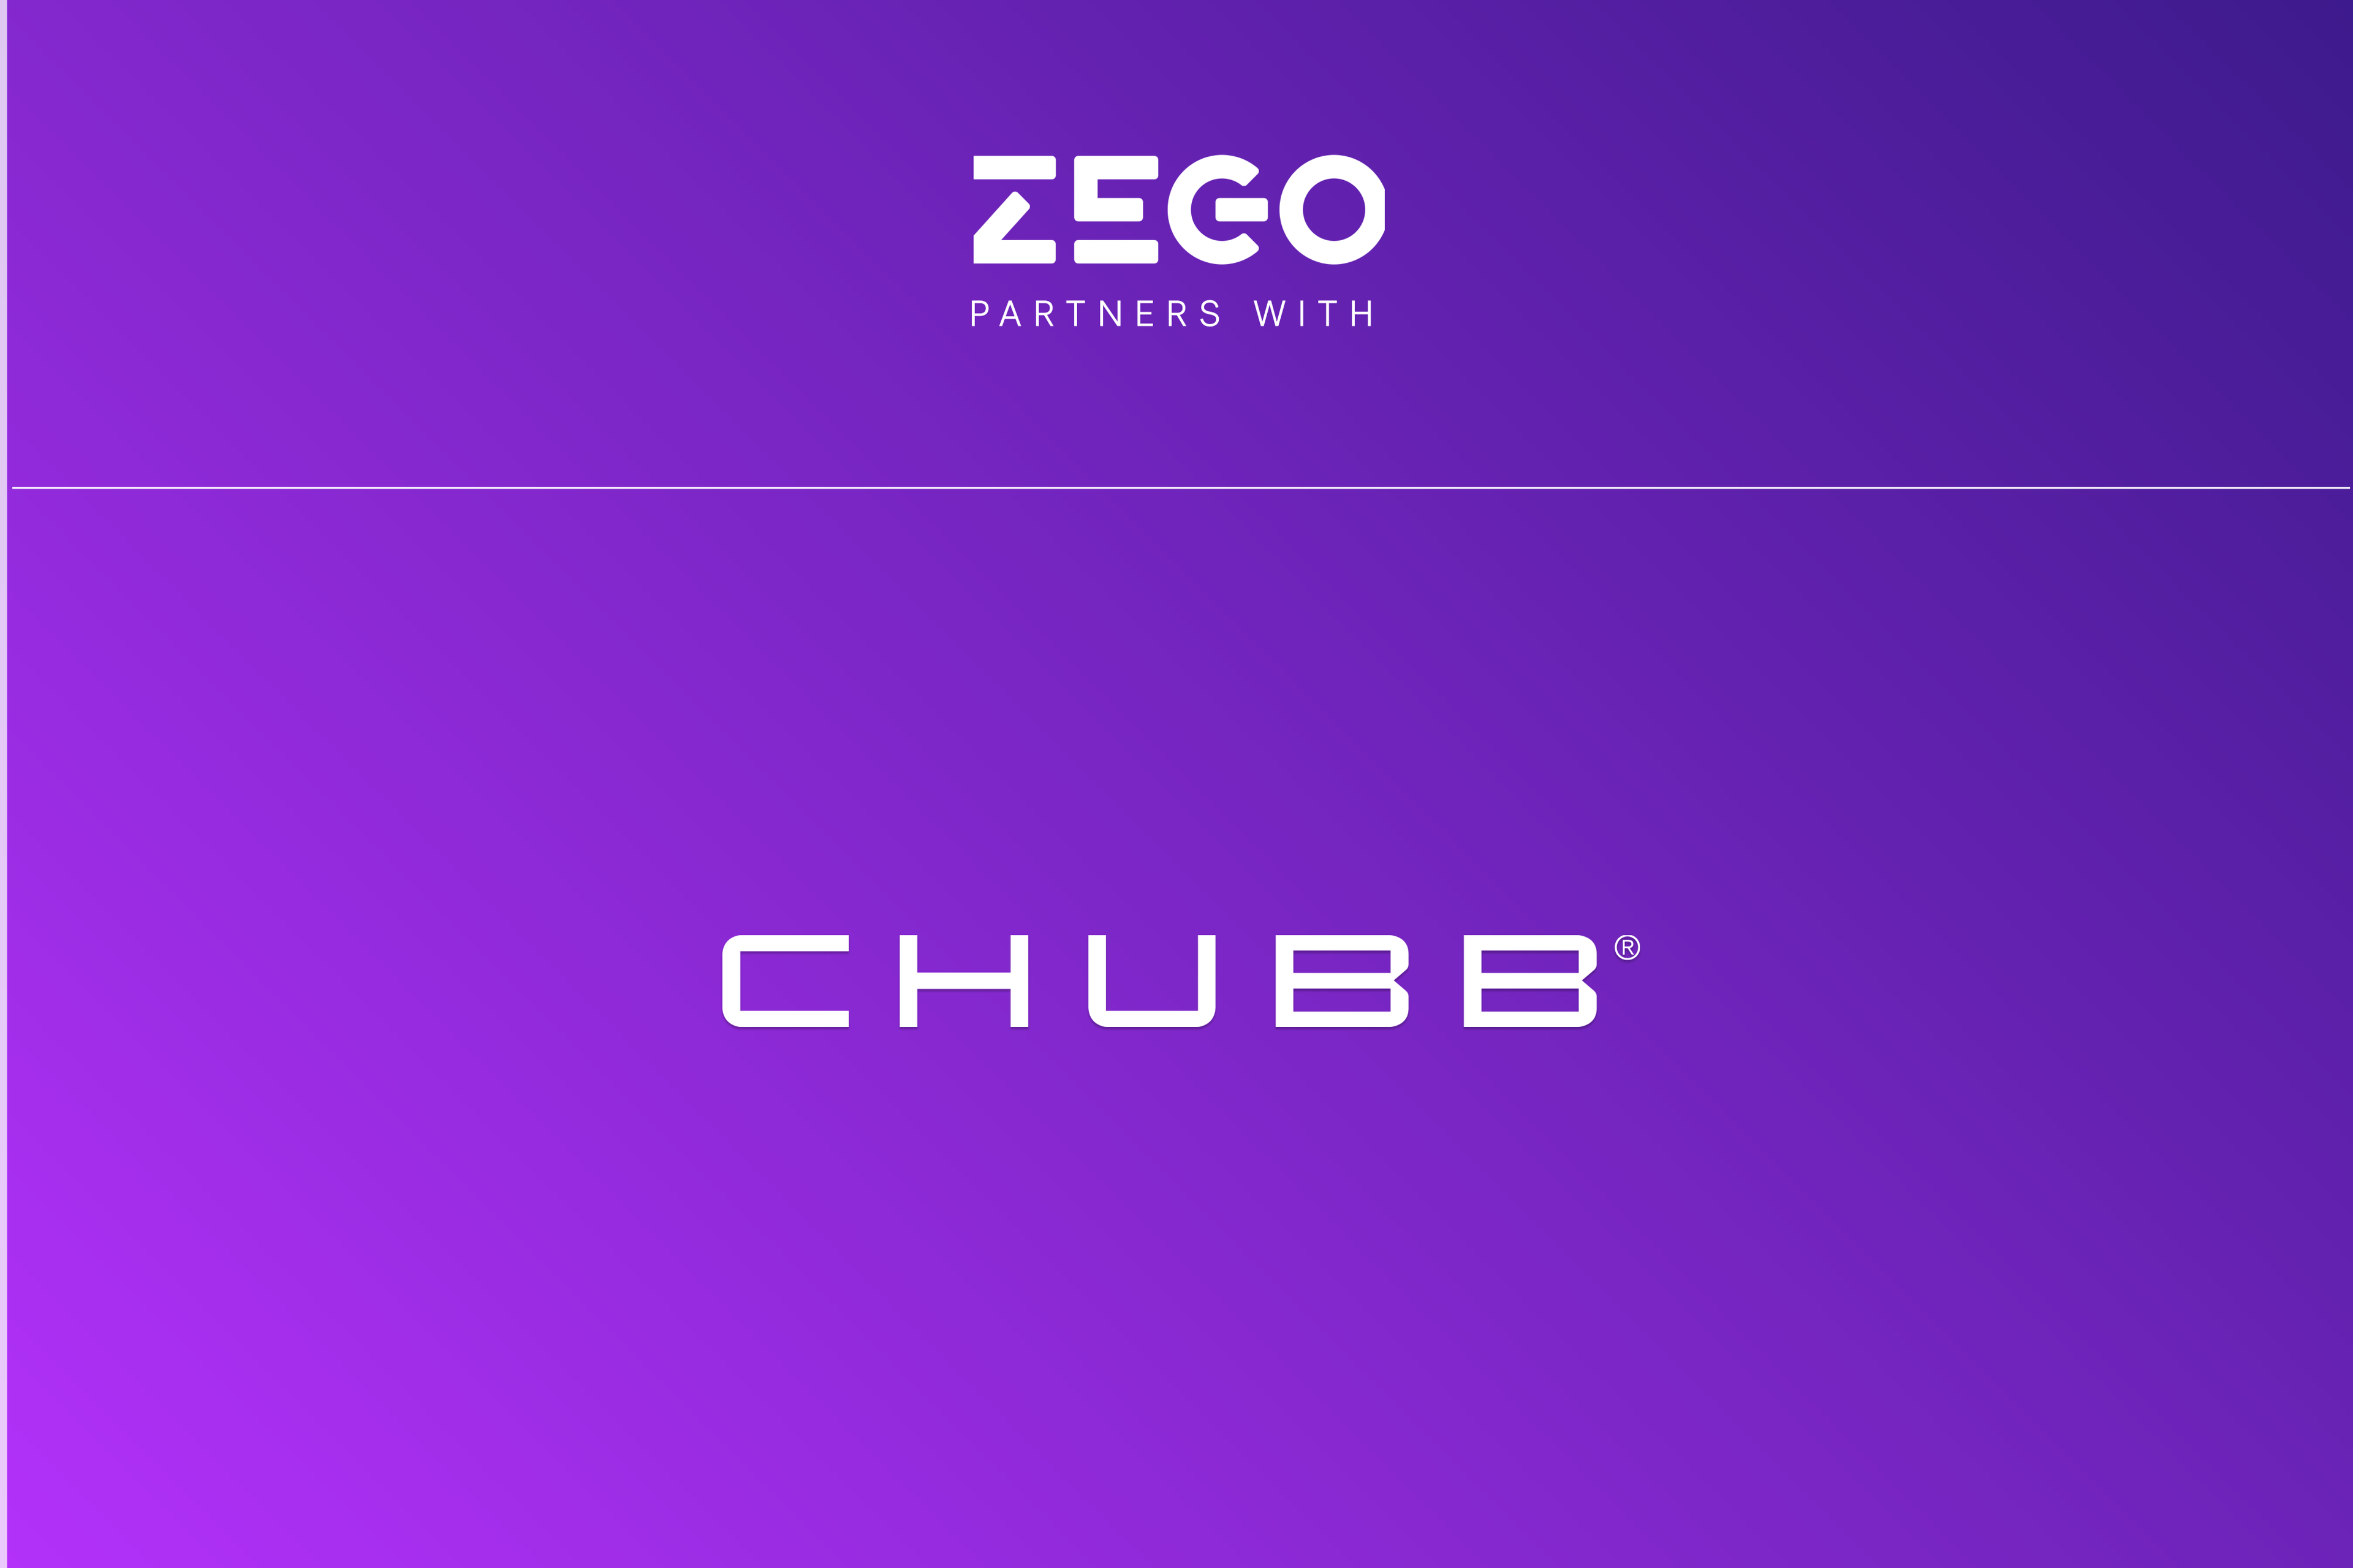 Insurtech Zego kondigt strategische samenwerking aan met Chubb voor een aanvulling op wagenparkverzekeringen